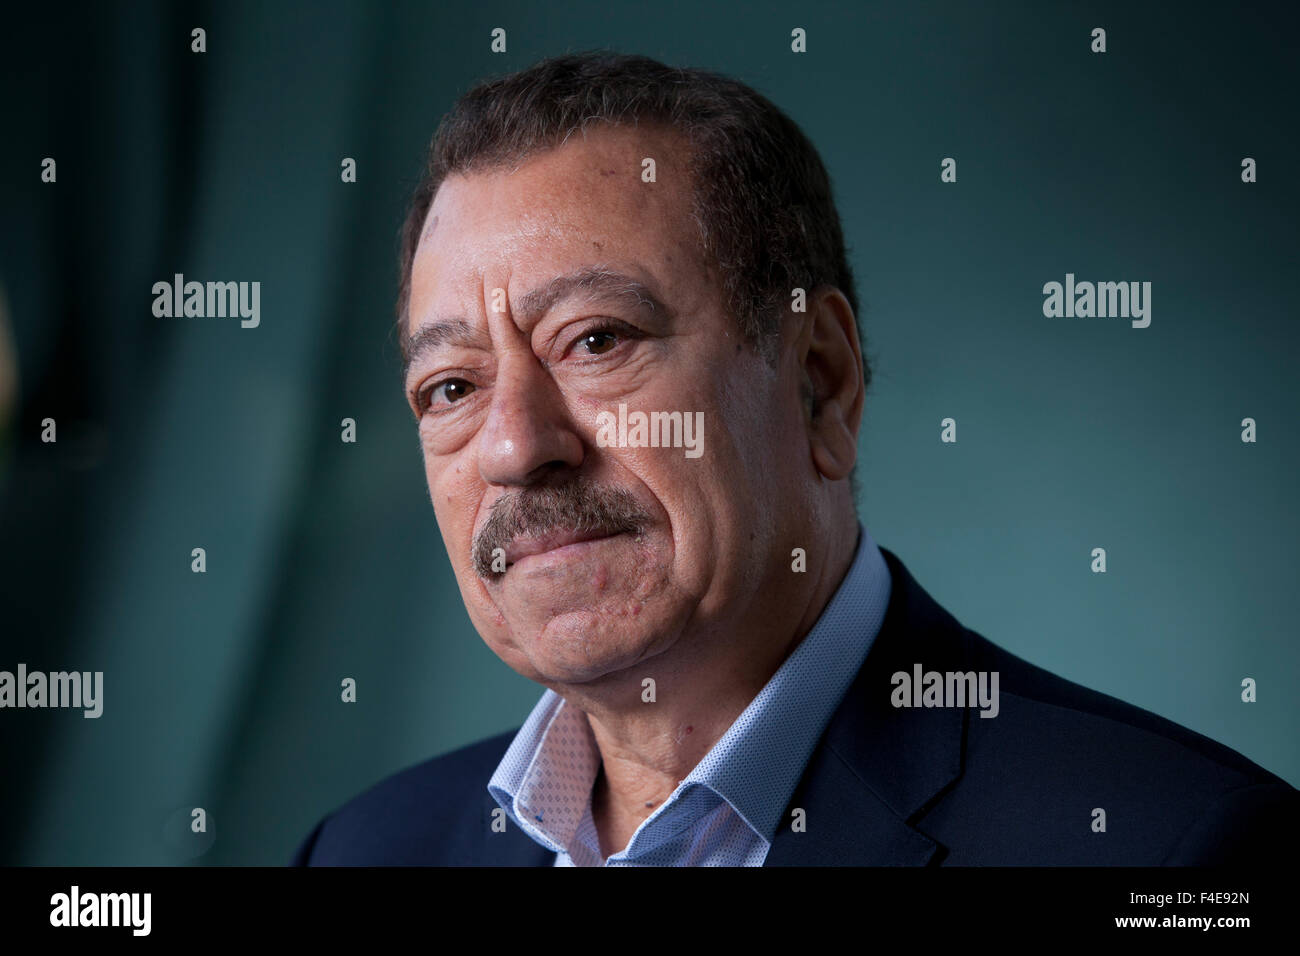 Abdel Bari Atwan, editor-in-chief di Rai al-Youm, un mondo arabo digitale sito web di notizie, al Edinburgh International Book Festival 2015. Edimburgo, Scozia. 23 Agosto 2015 Foto Stock